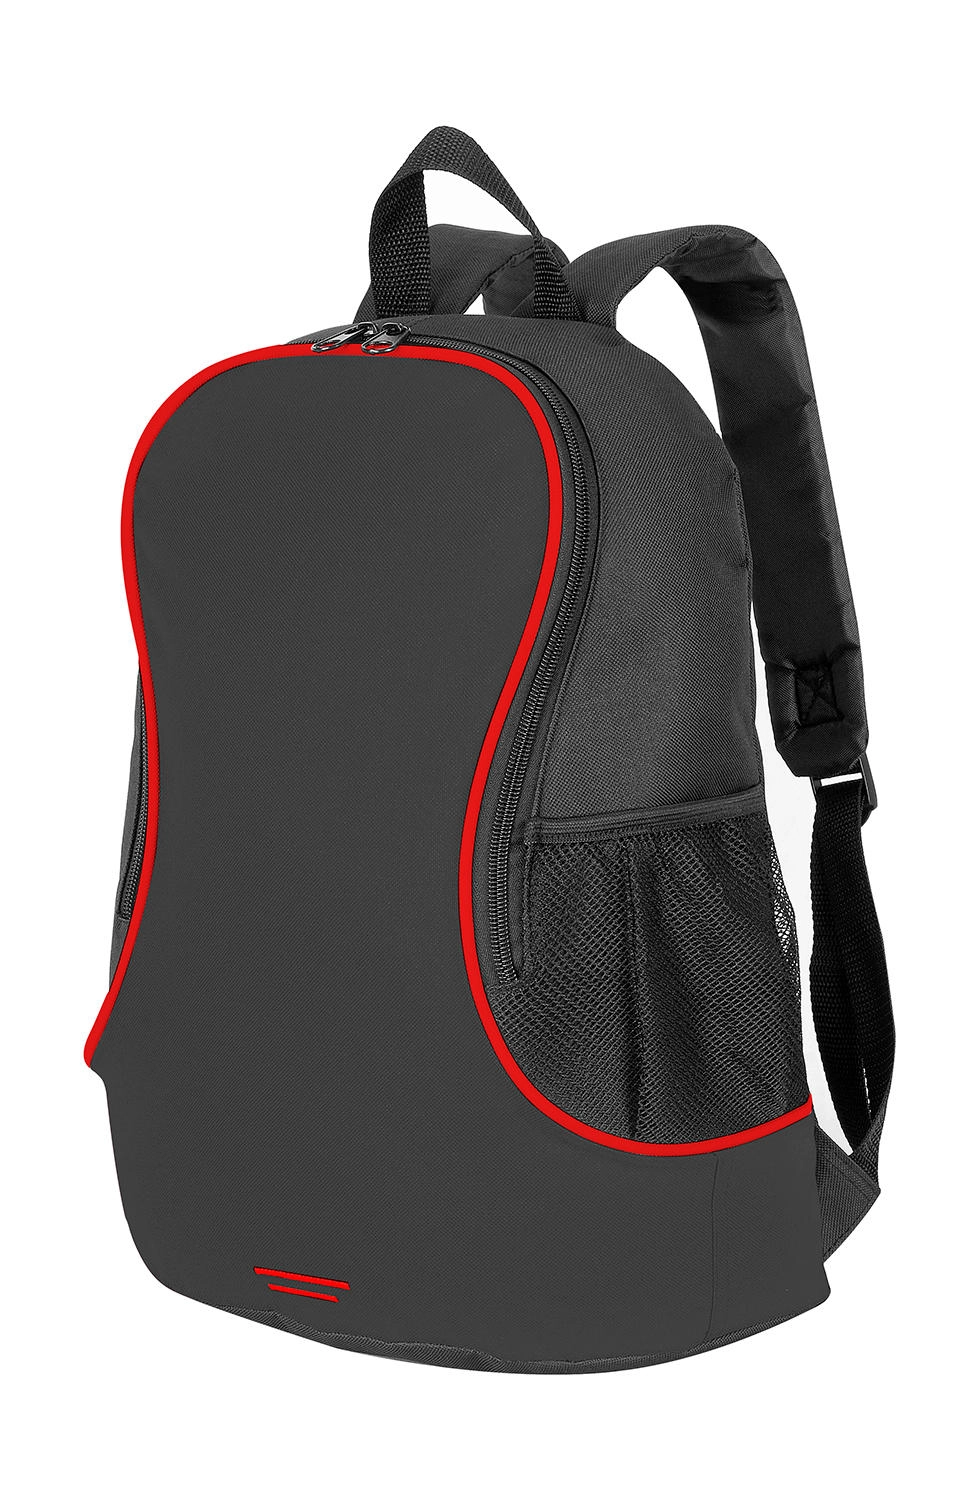 Fuji Basic Backpack zum Besticken und Bedrucken in der Farbe Black/Red mit Ihren Logo, Schriftzug oder Motiv.